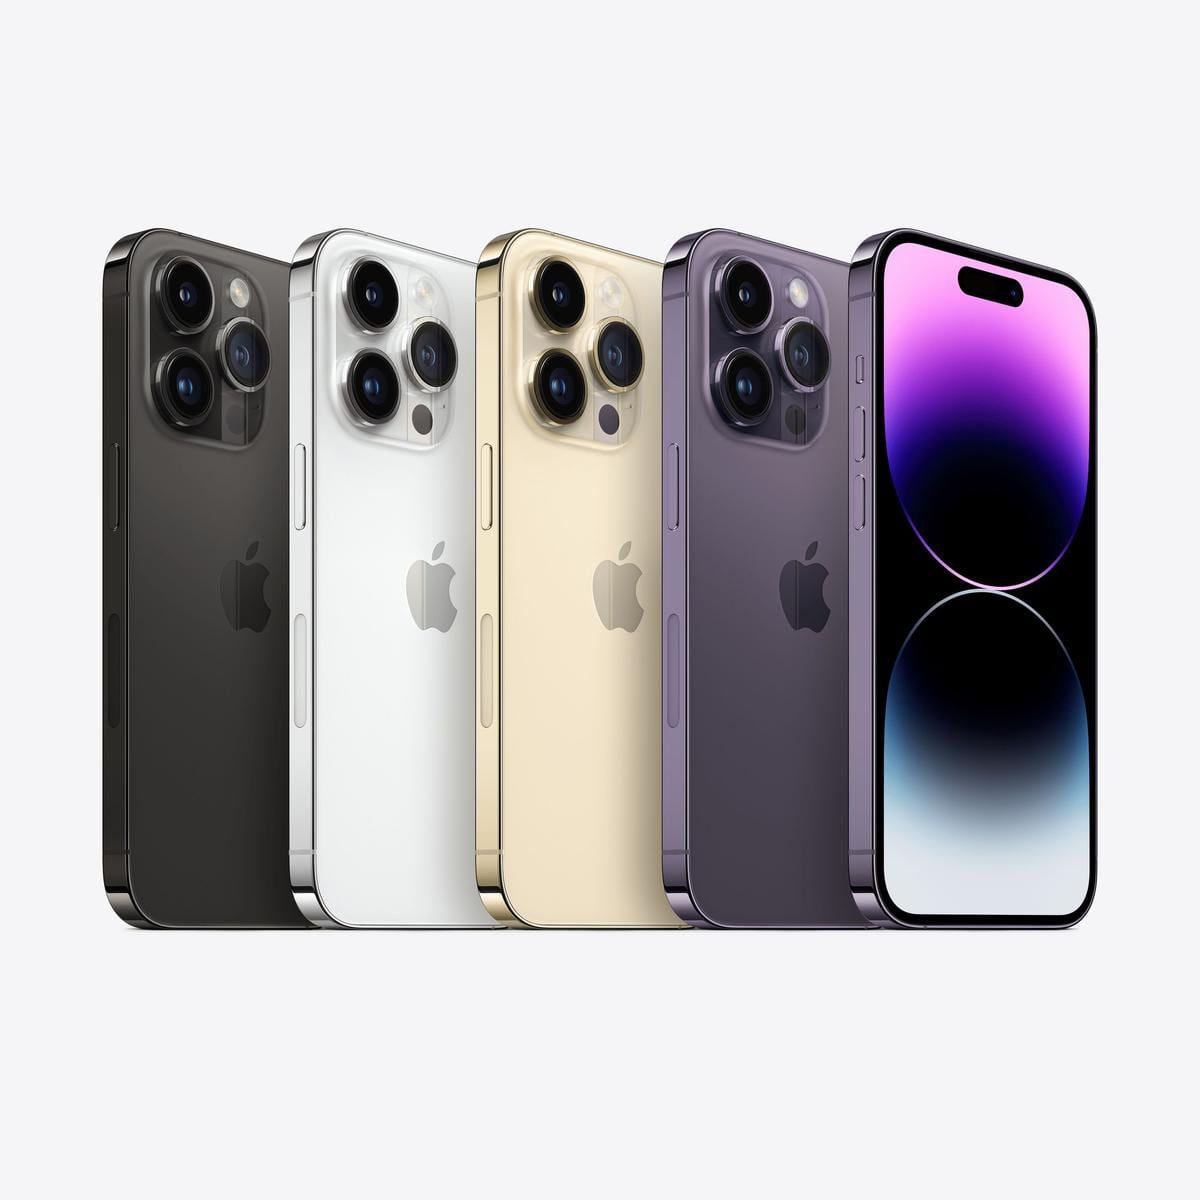 Un iPhone rosa? Si, Apple podría agregar un nuevo color